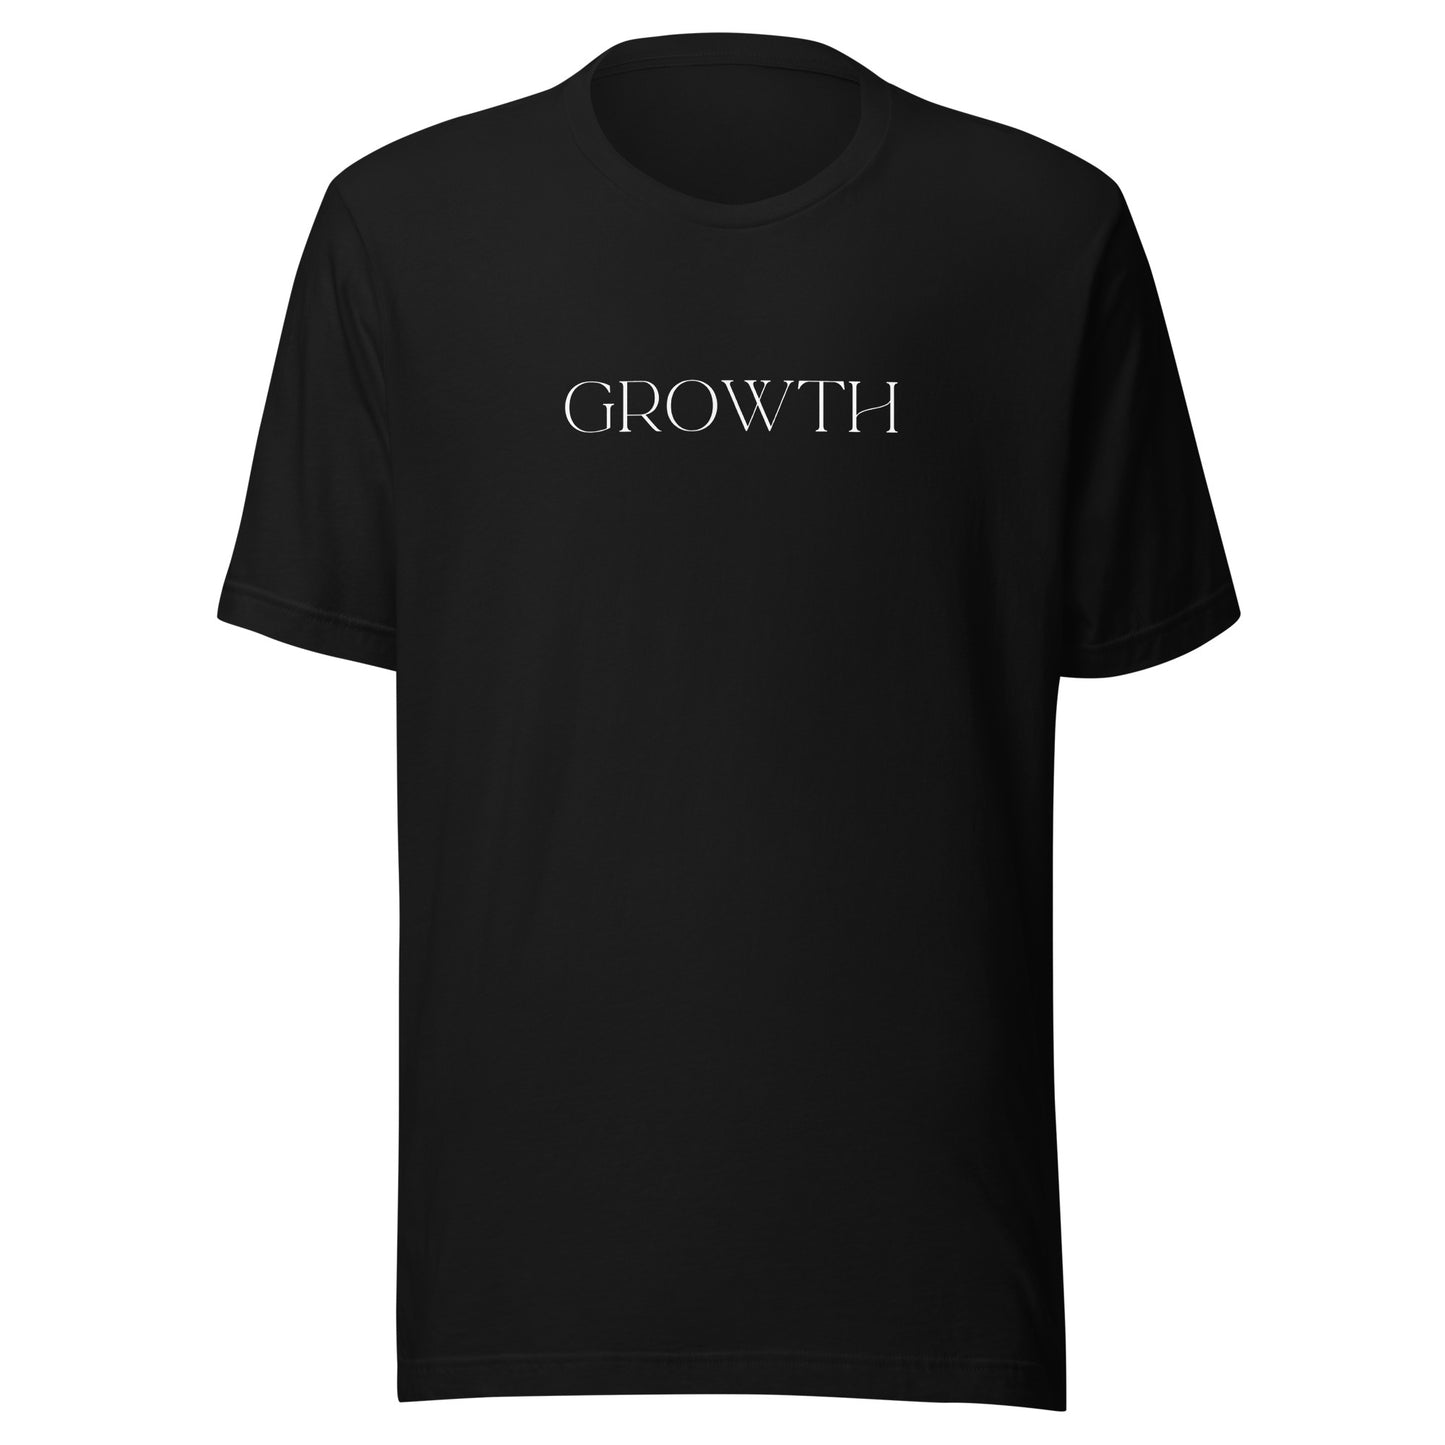 Growth - Designed by Zeeshan Waheed - izeeshanwaheed